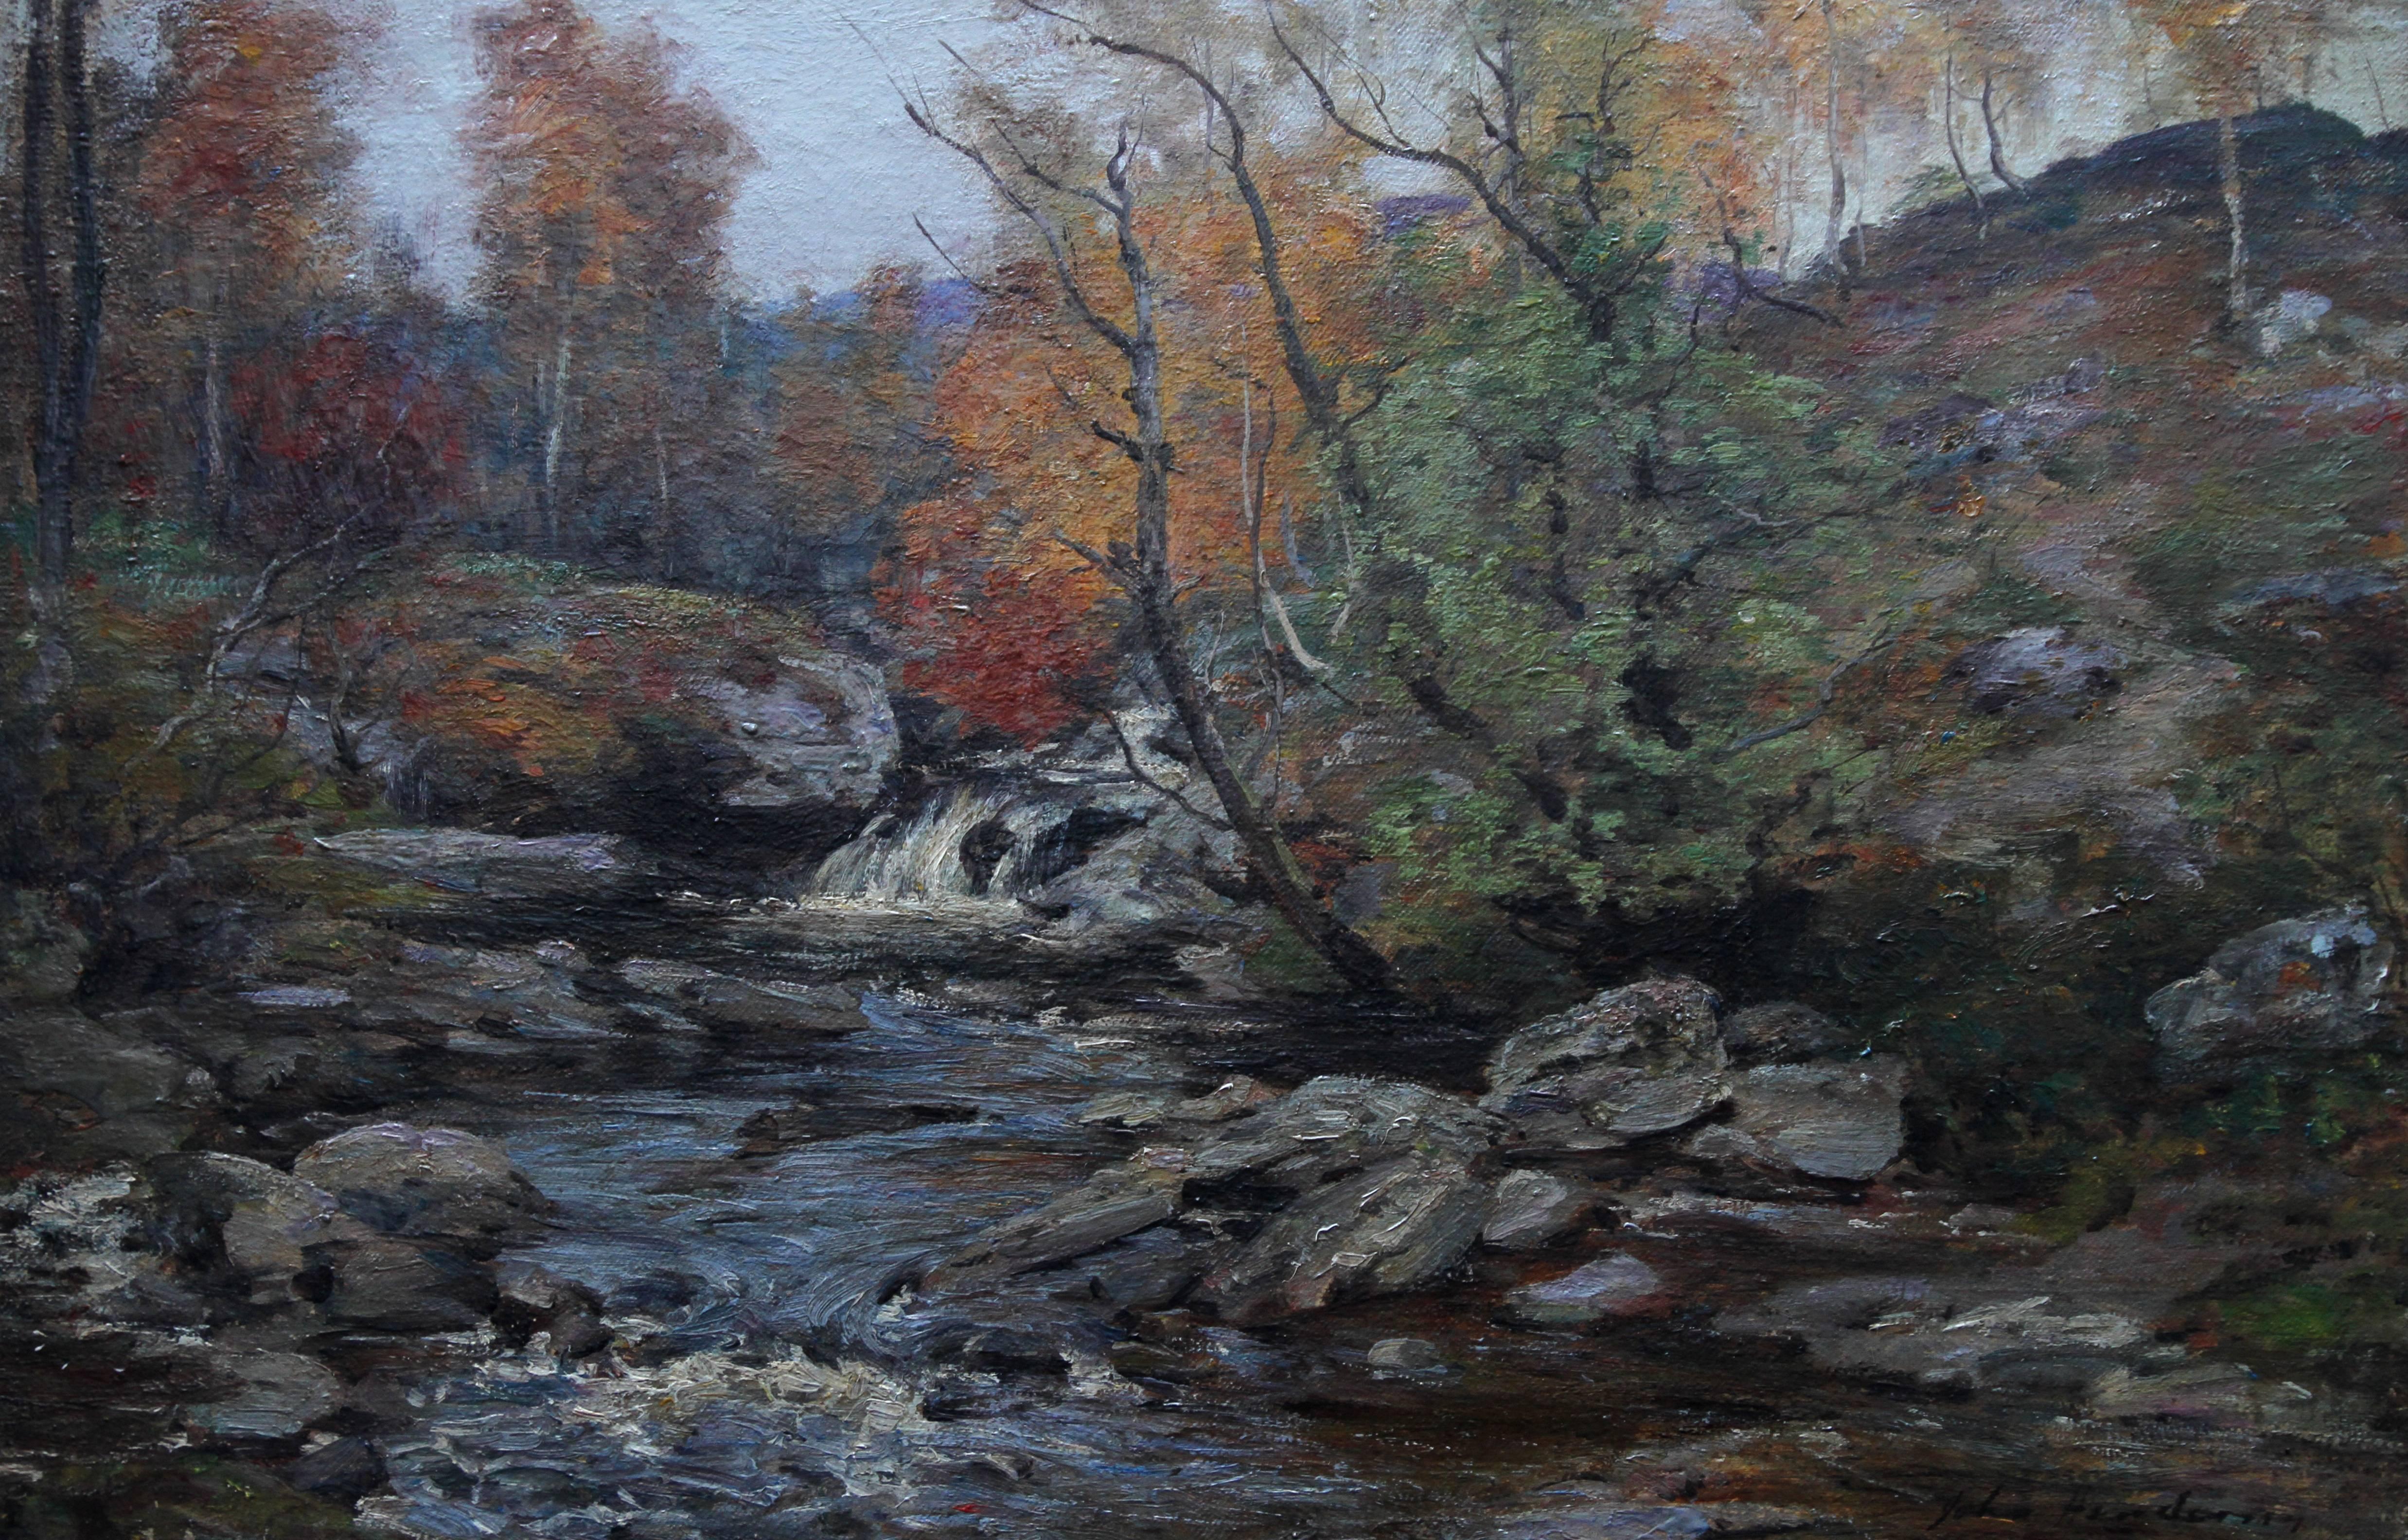 Autumn in the Glen – schottisches impressionistisches Ölgemälde einer Flusslandschaft – Painting von John Henderson